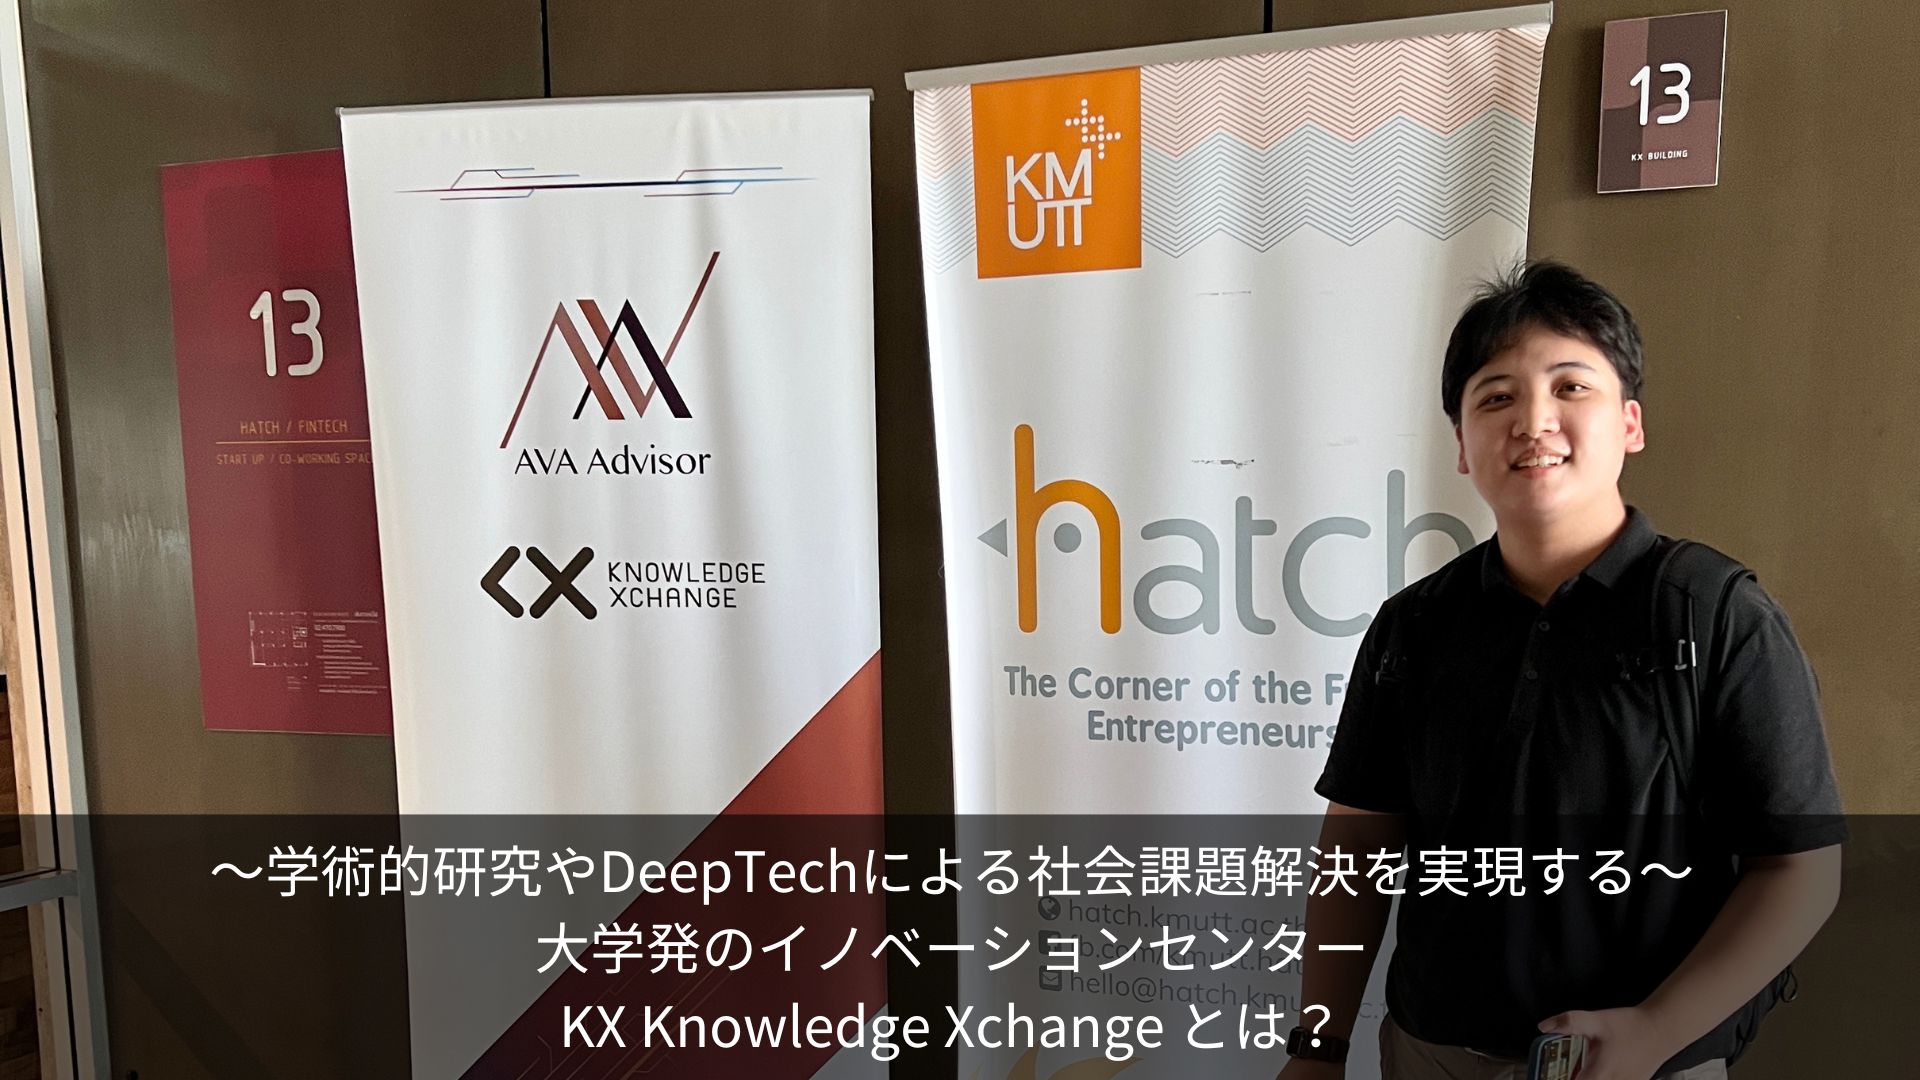 〜学術的研究やDeepTechによる社会課題解決を実現する〜大学発のイノベーションセンター KX Knowledge Xchange とは？